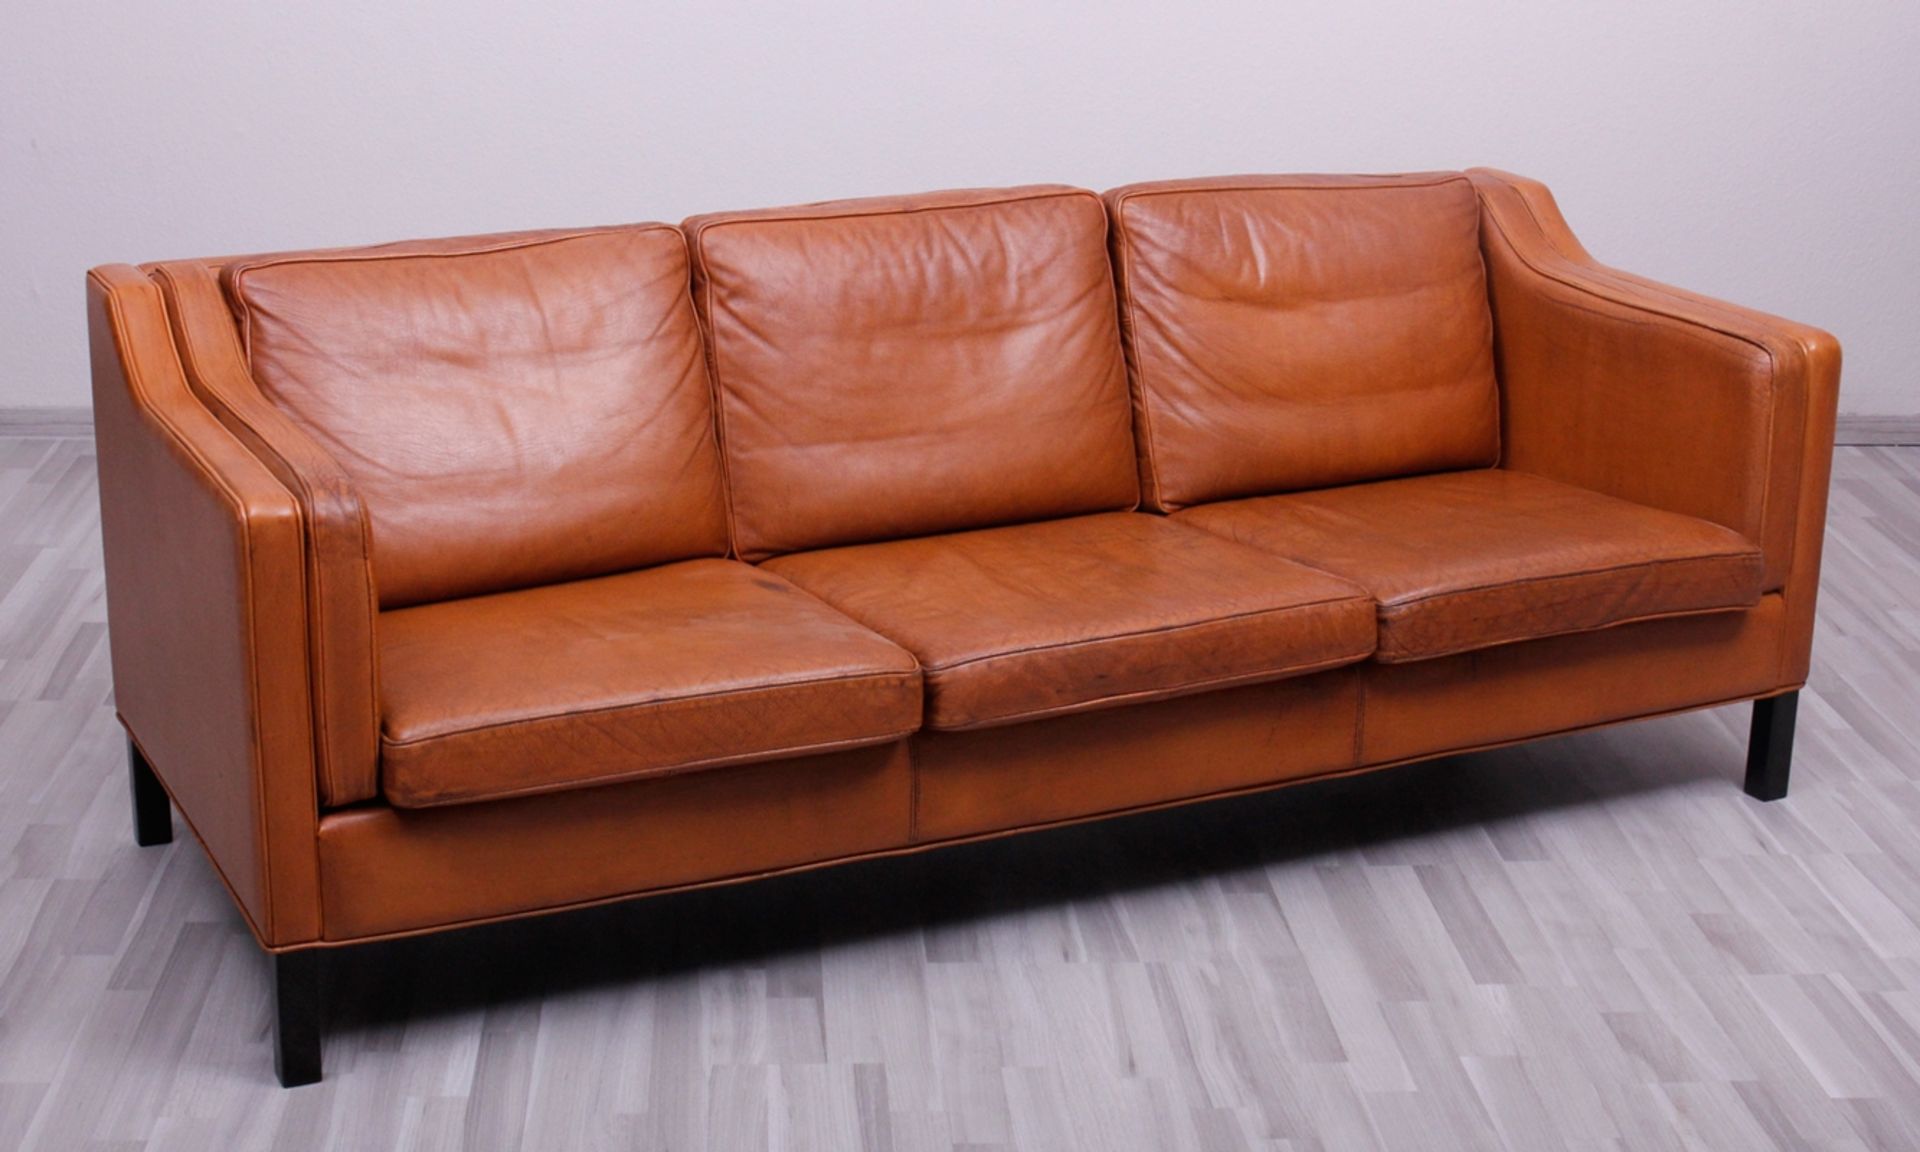 3-Sitzer Sofa, wohl Stouby Möbler, Dänemark, um 1960/70, cognacfarbenes Leder, HxBxT: 76x213x90cm,